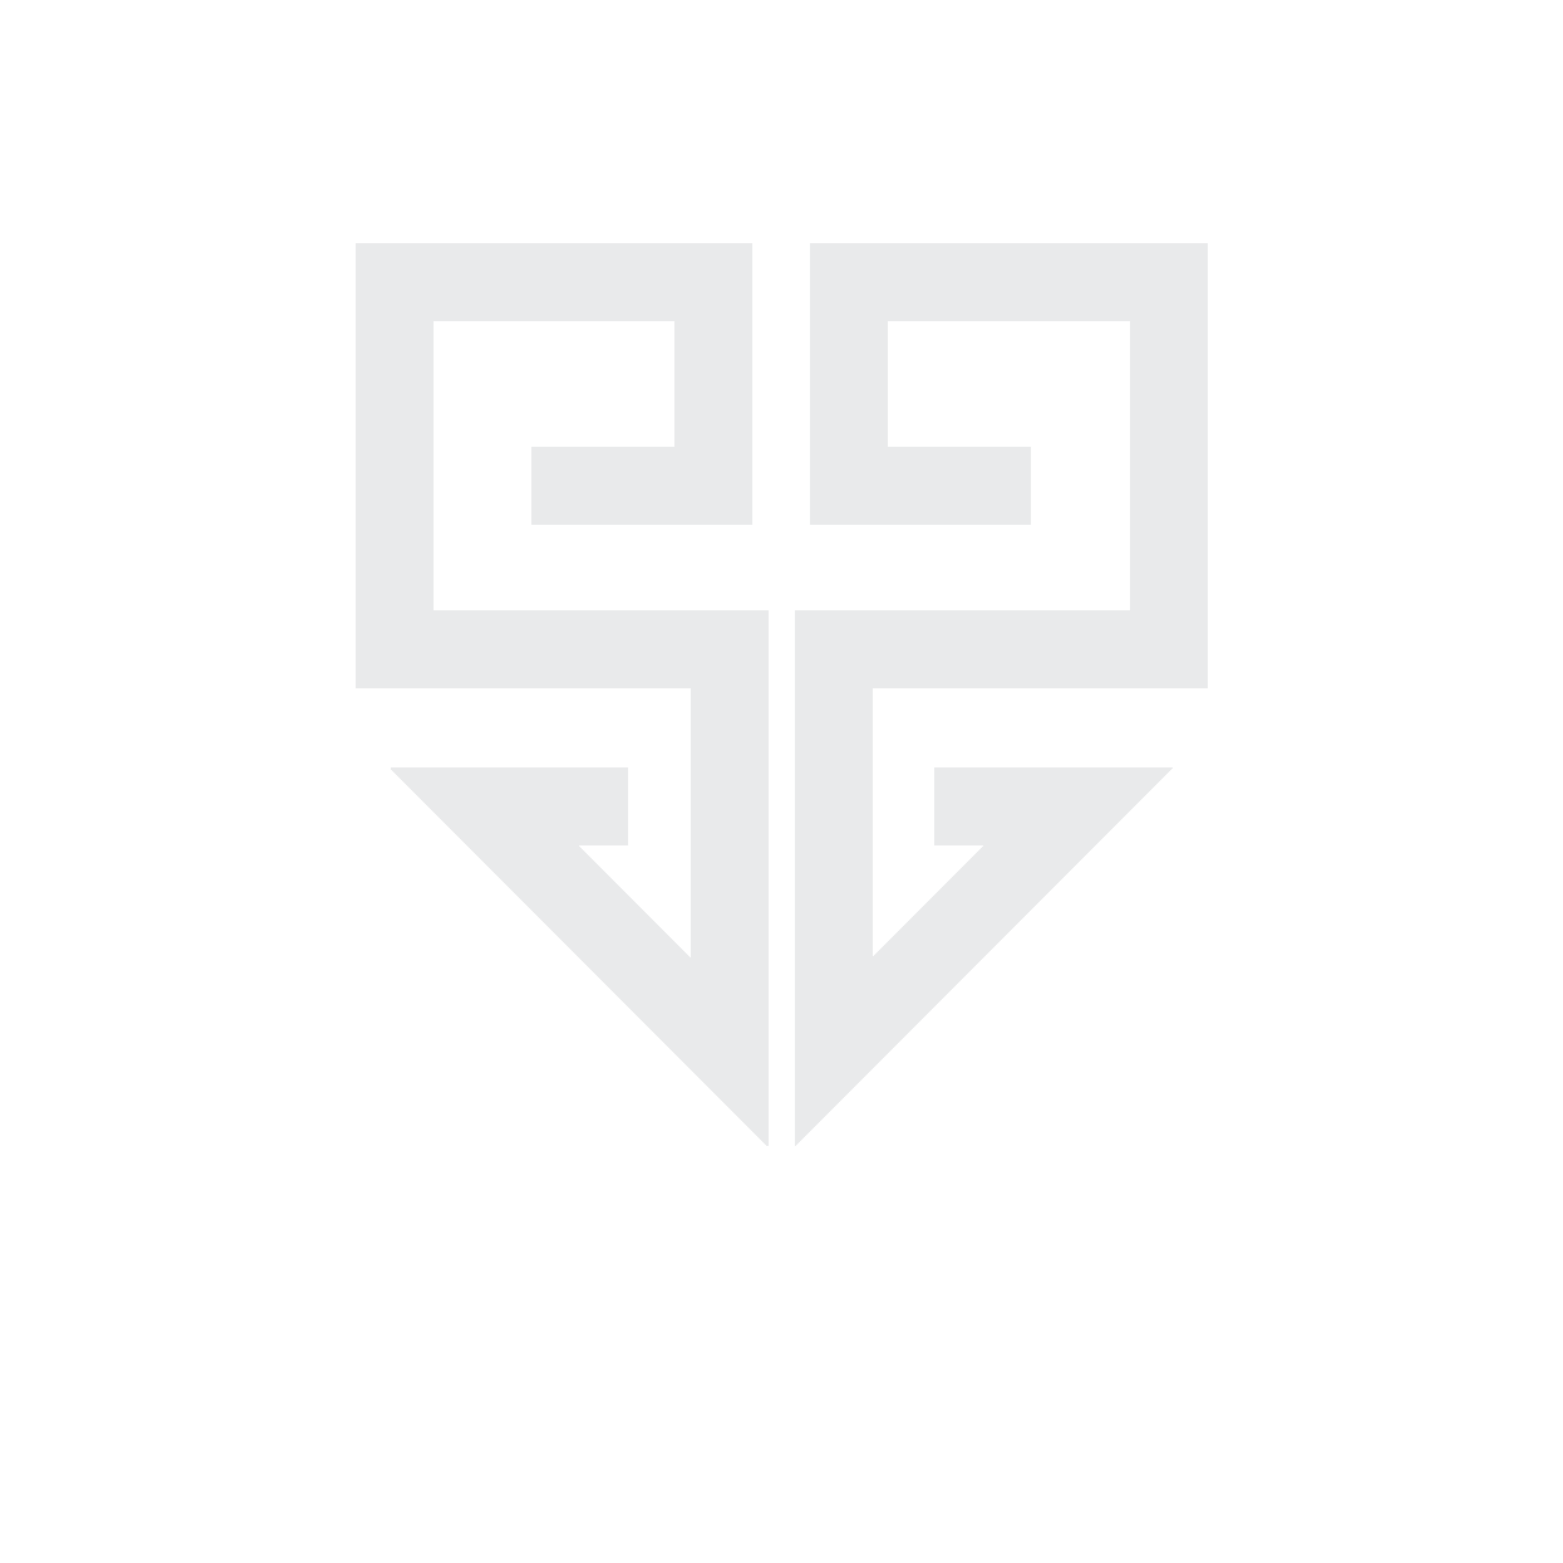 SentinelSec logo